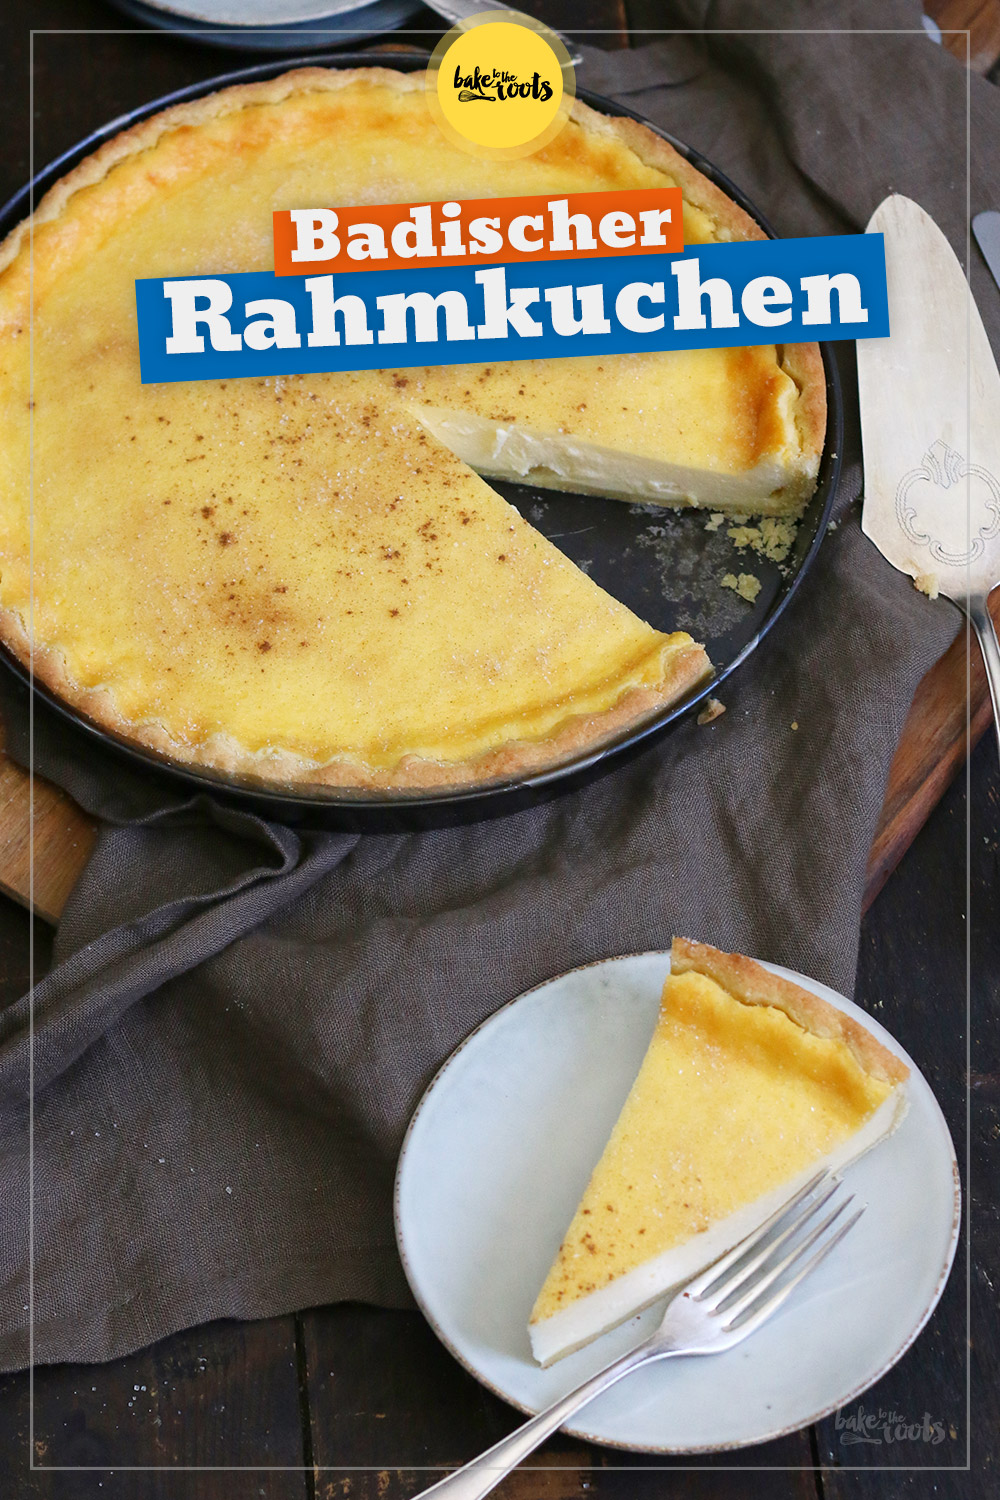 Badischer Rahmkuchen | Bake to the roots